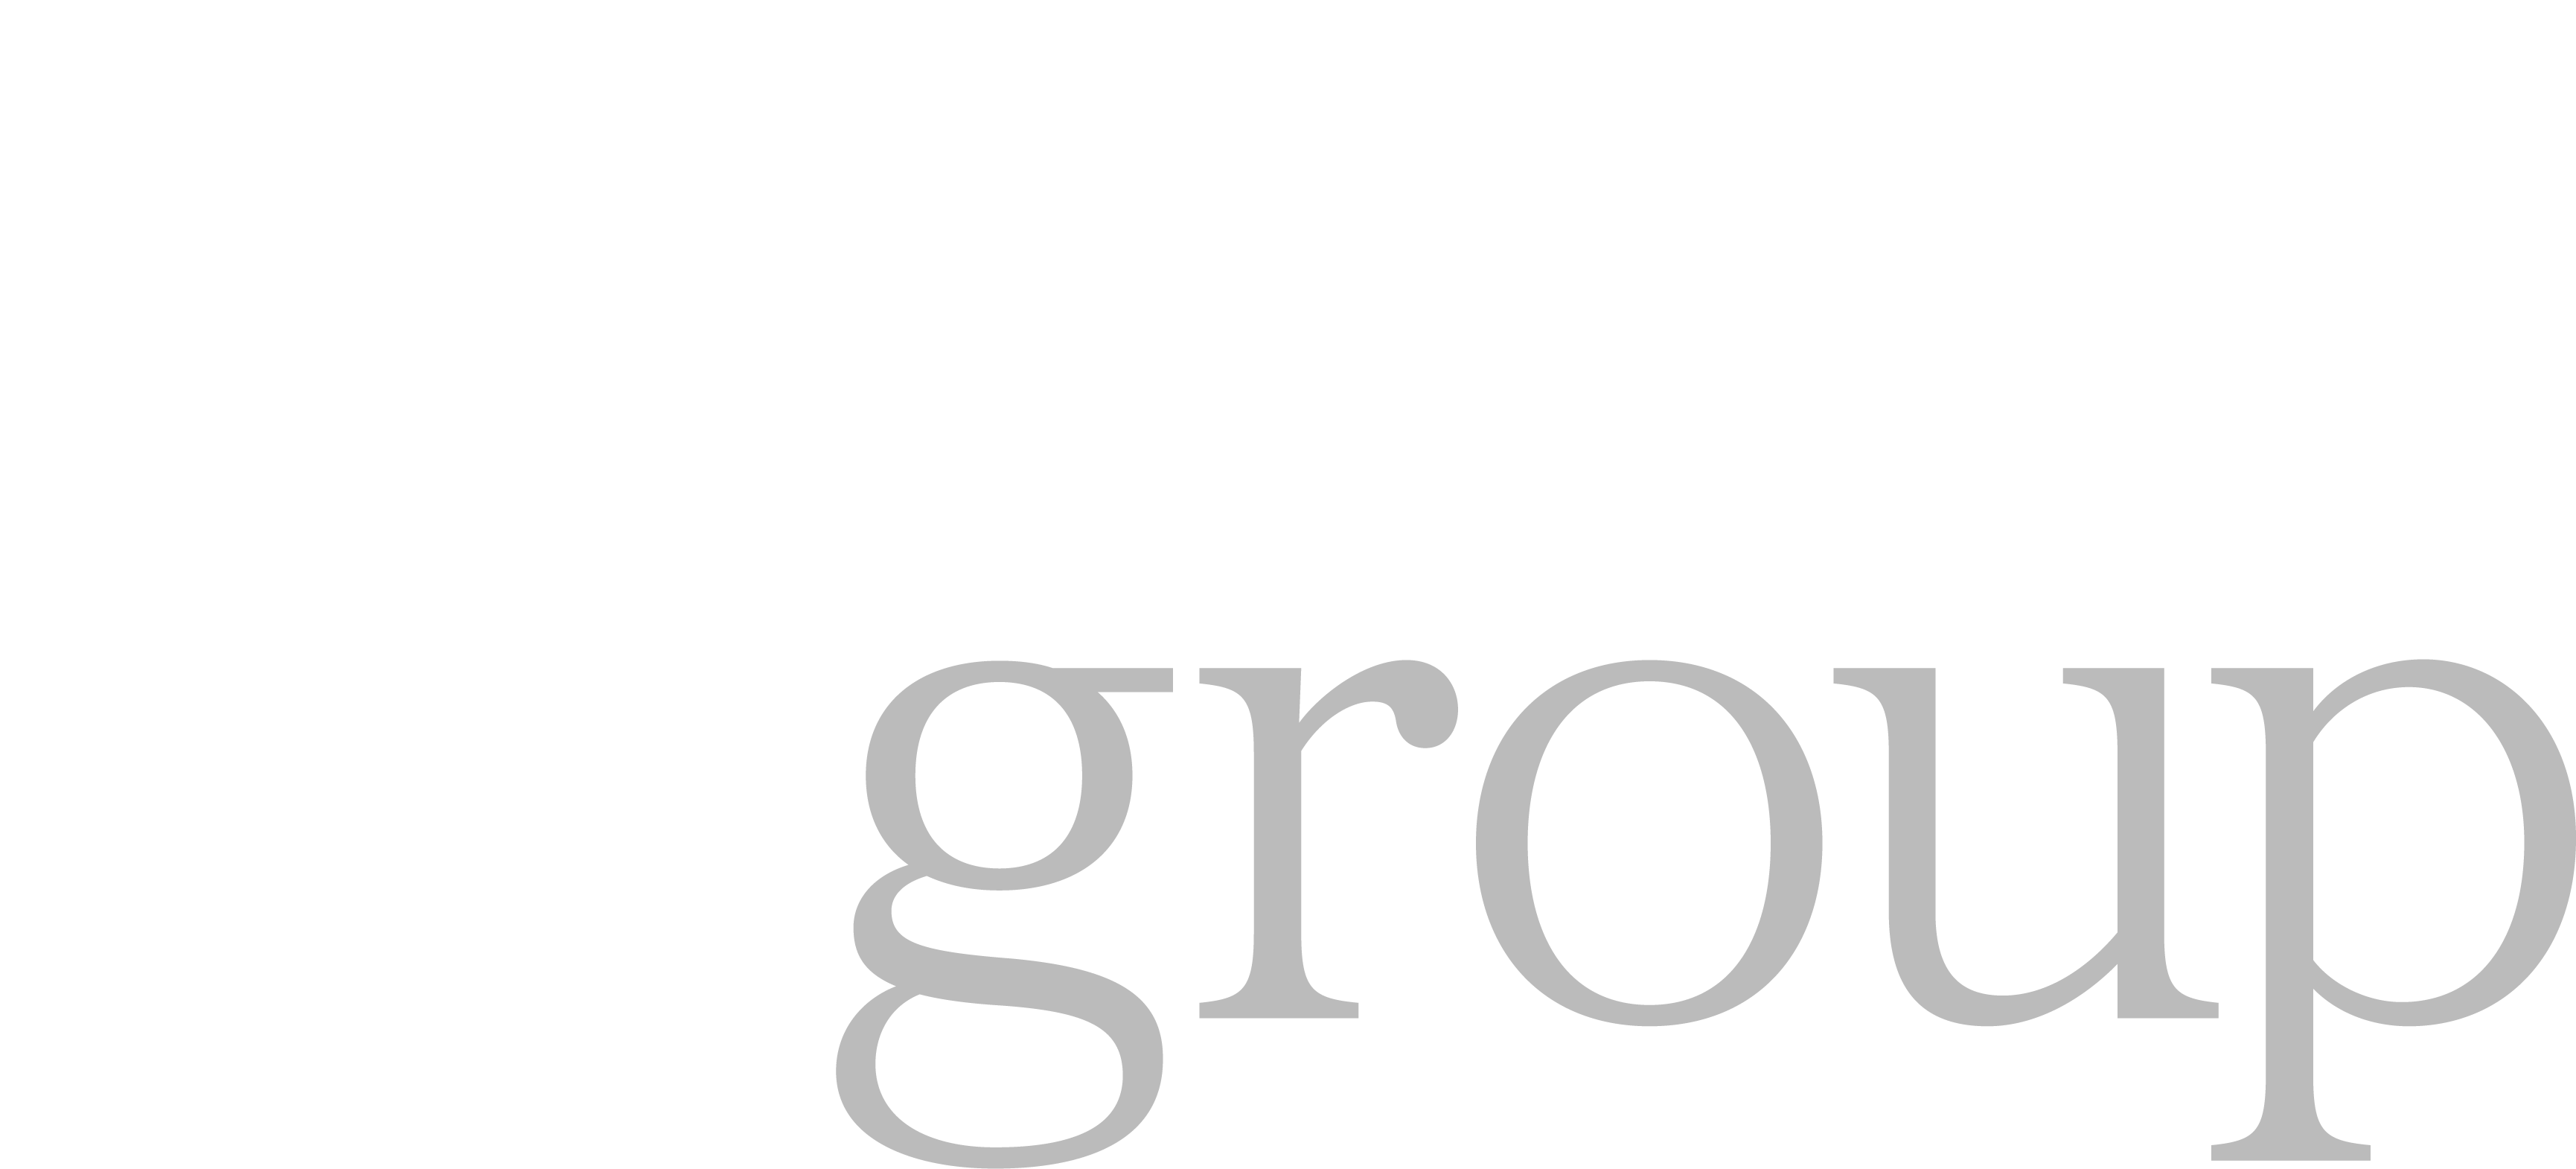 MOREgroup reverse logo